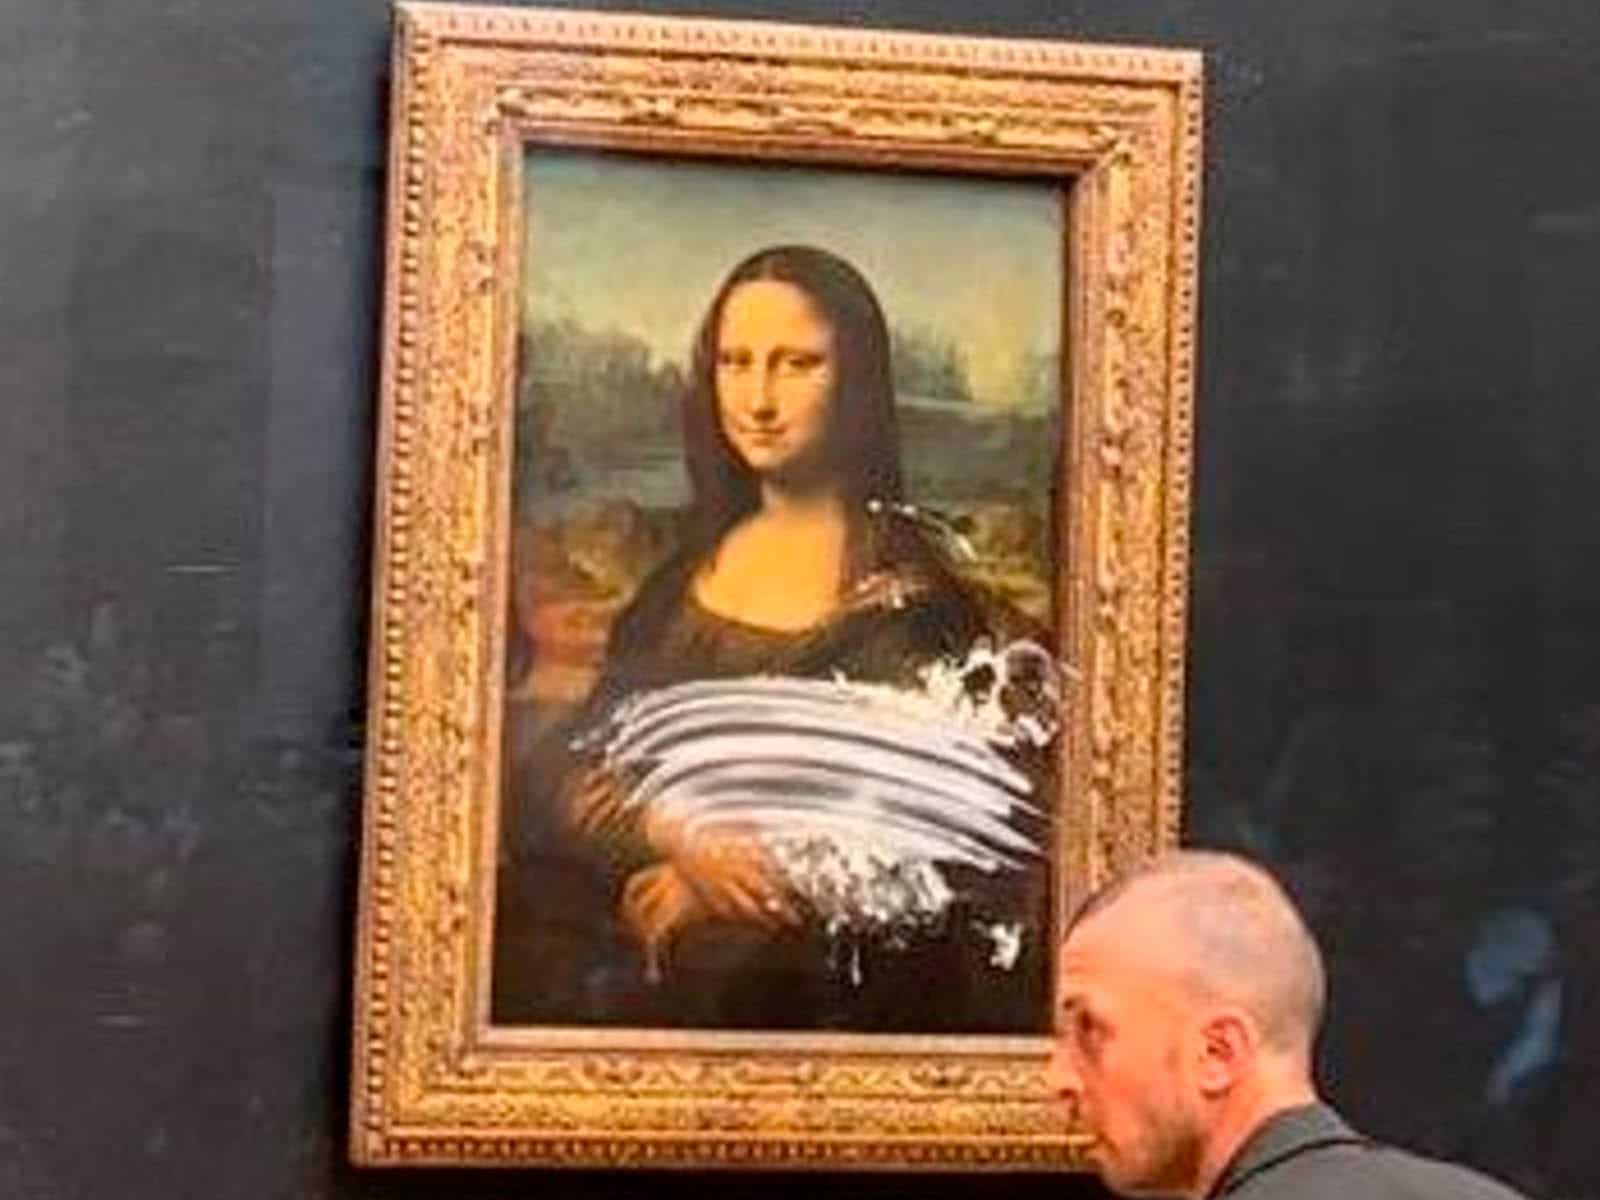 Un hombre disfrazado le pega un tartazo a la Mona Lisa